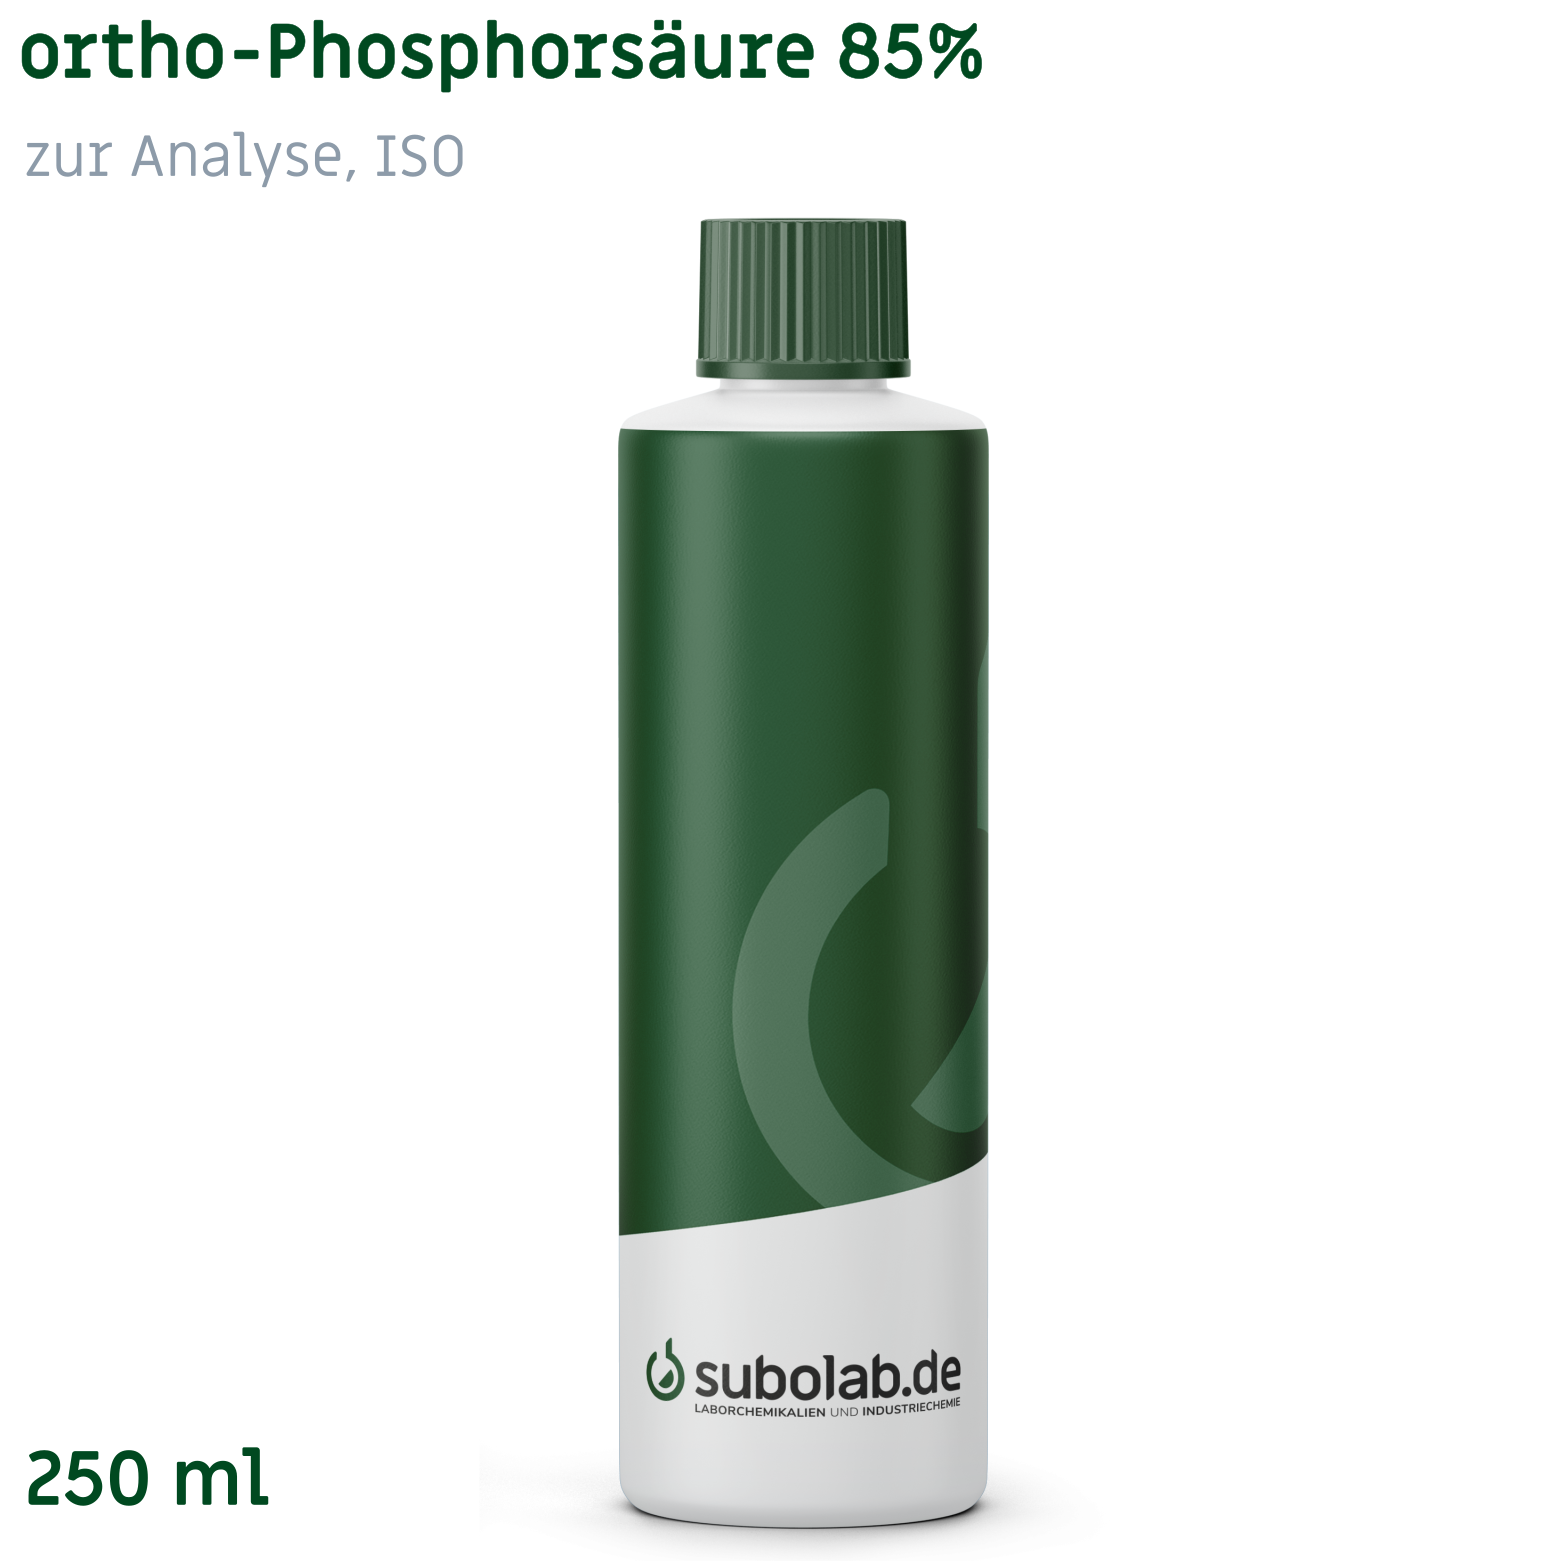 Bild von ortho-Phosphorsäure 85% zur Analyse, ISO (250 ml)